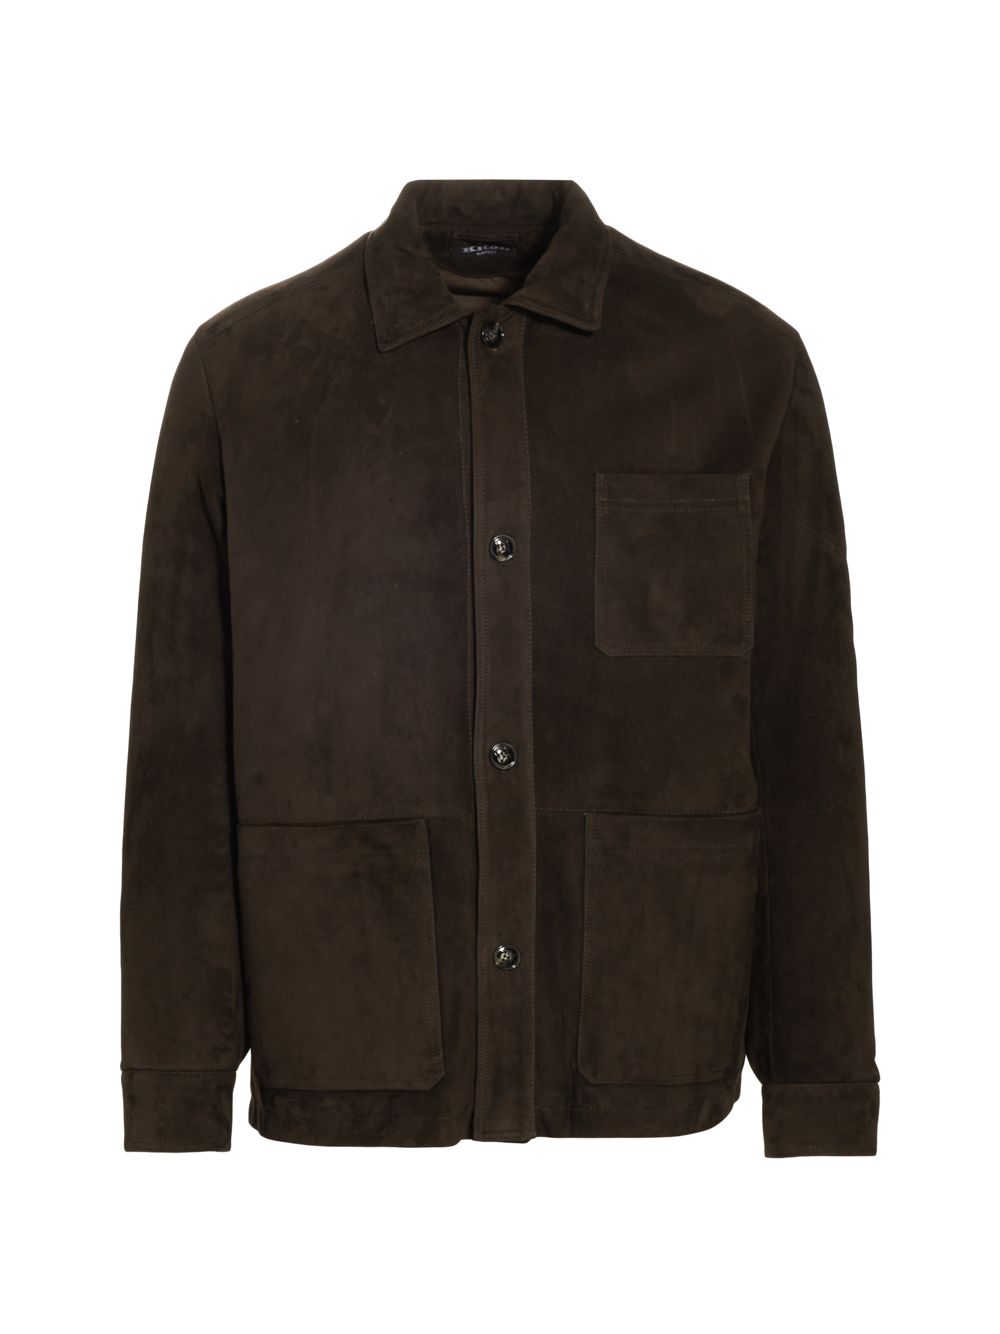 Замшевая куртка с пуговицами спереди Kiton, коричневый куртка замшевая zara коричневый